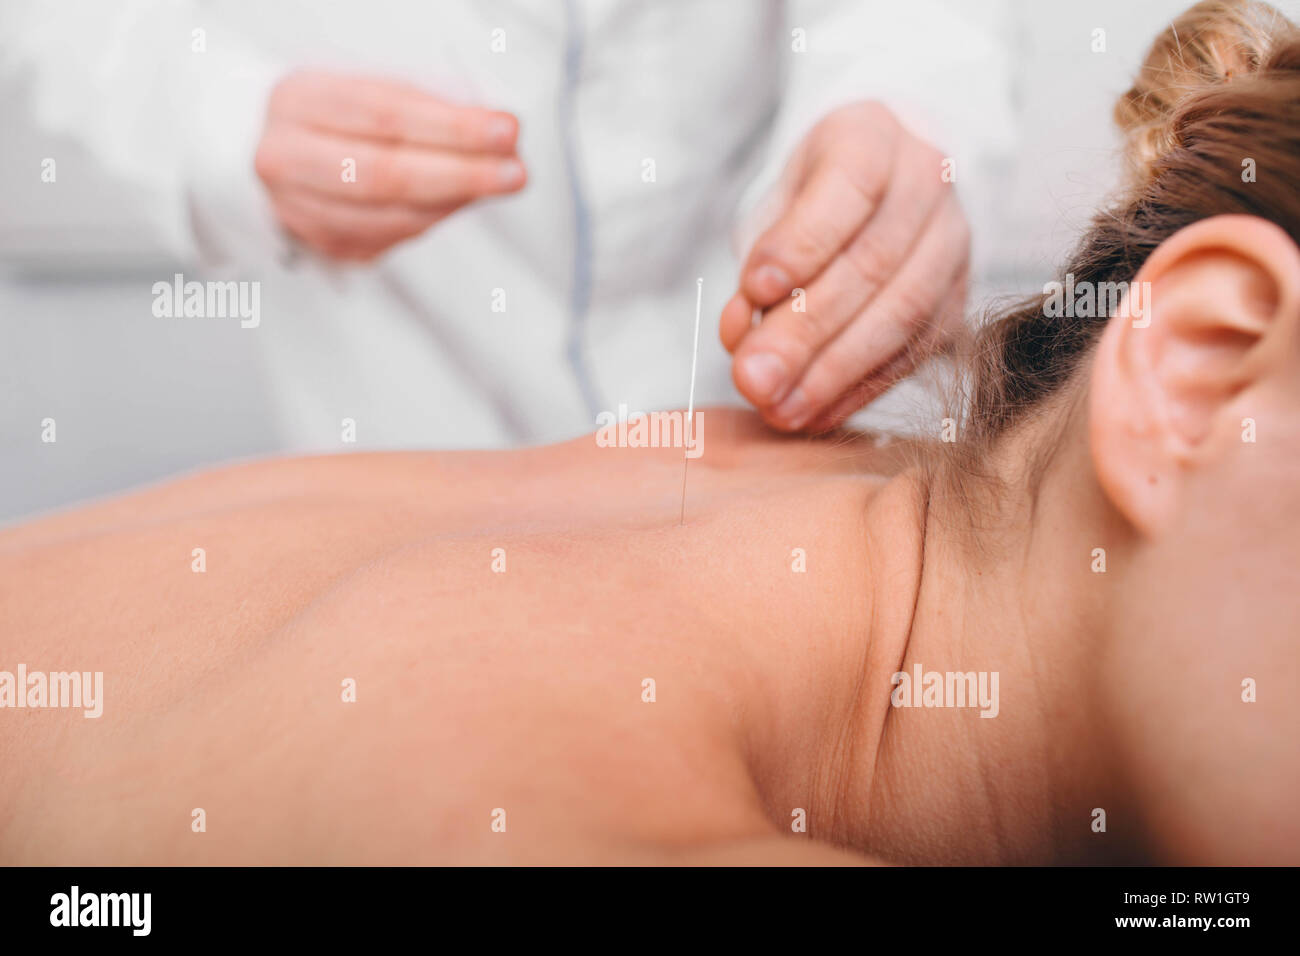 Acupuntor insertando una aguja en la espalda femenina. paciente con tratamiento tradicional china usando agujas para restaurar un flujo de energía a través de spec Foto de stock